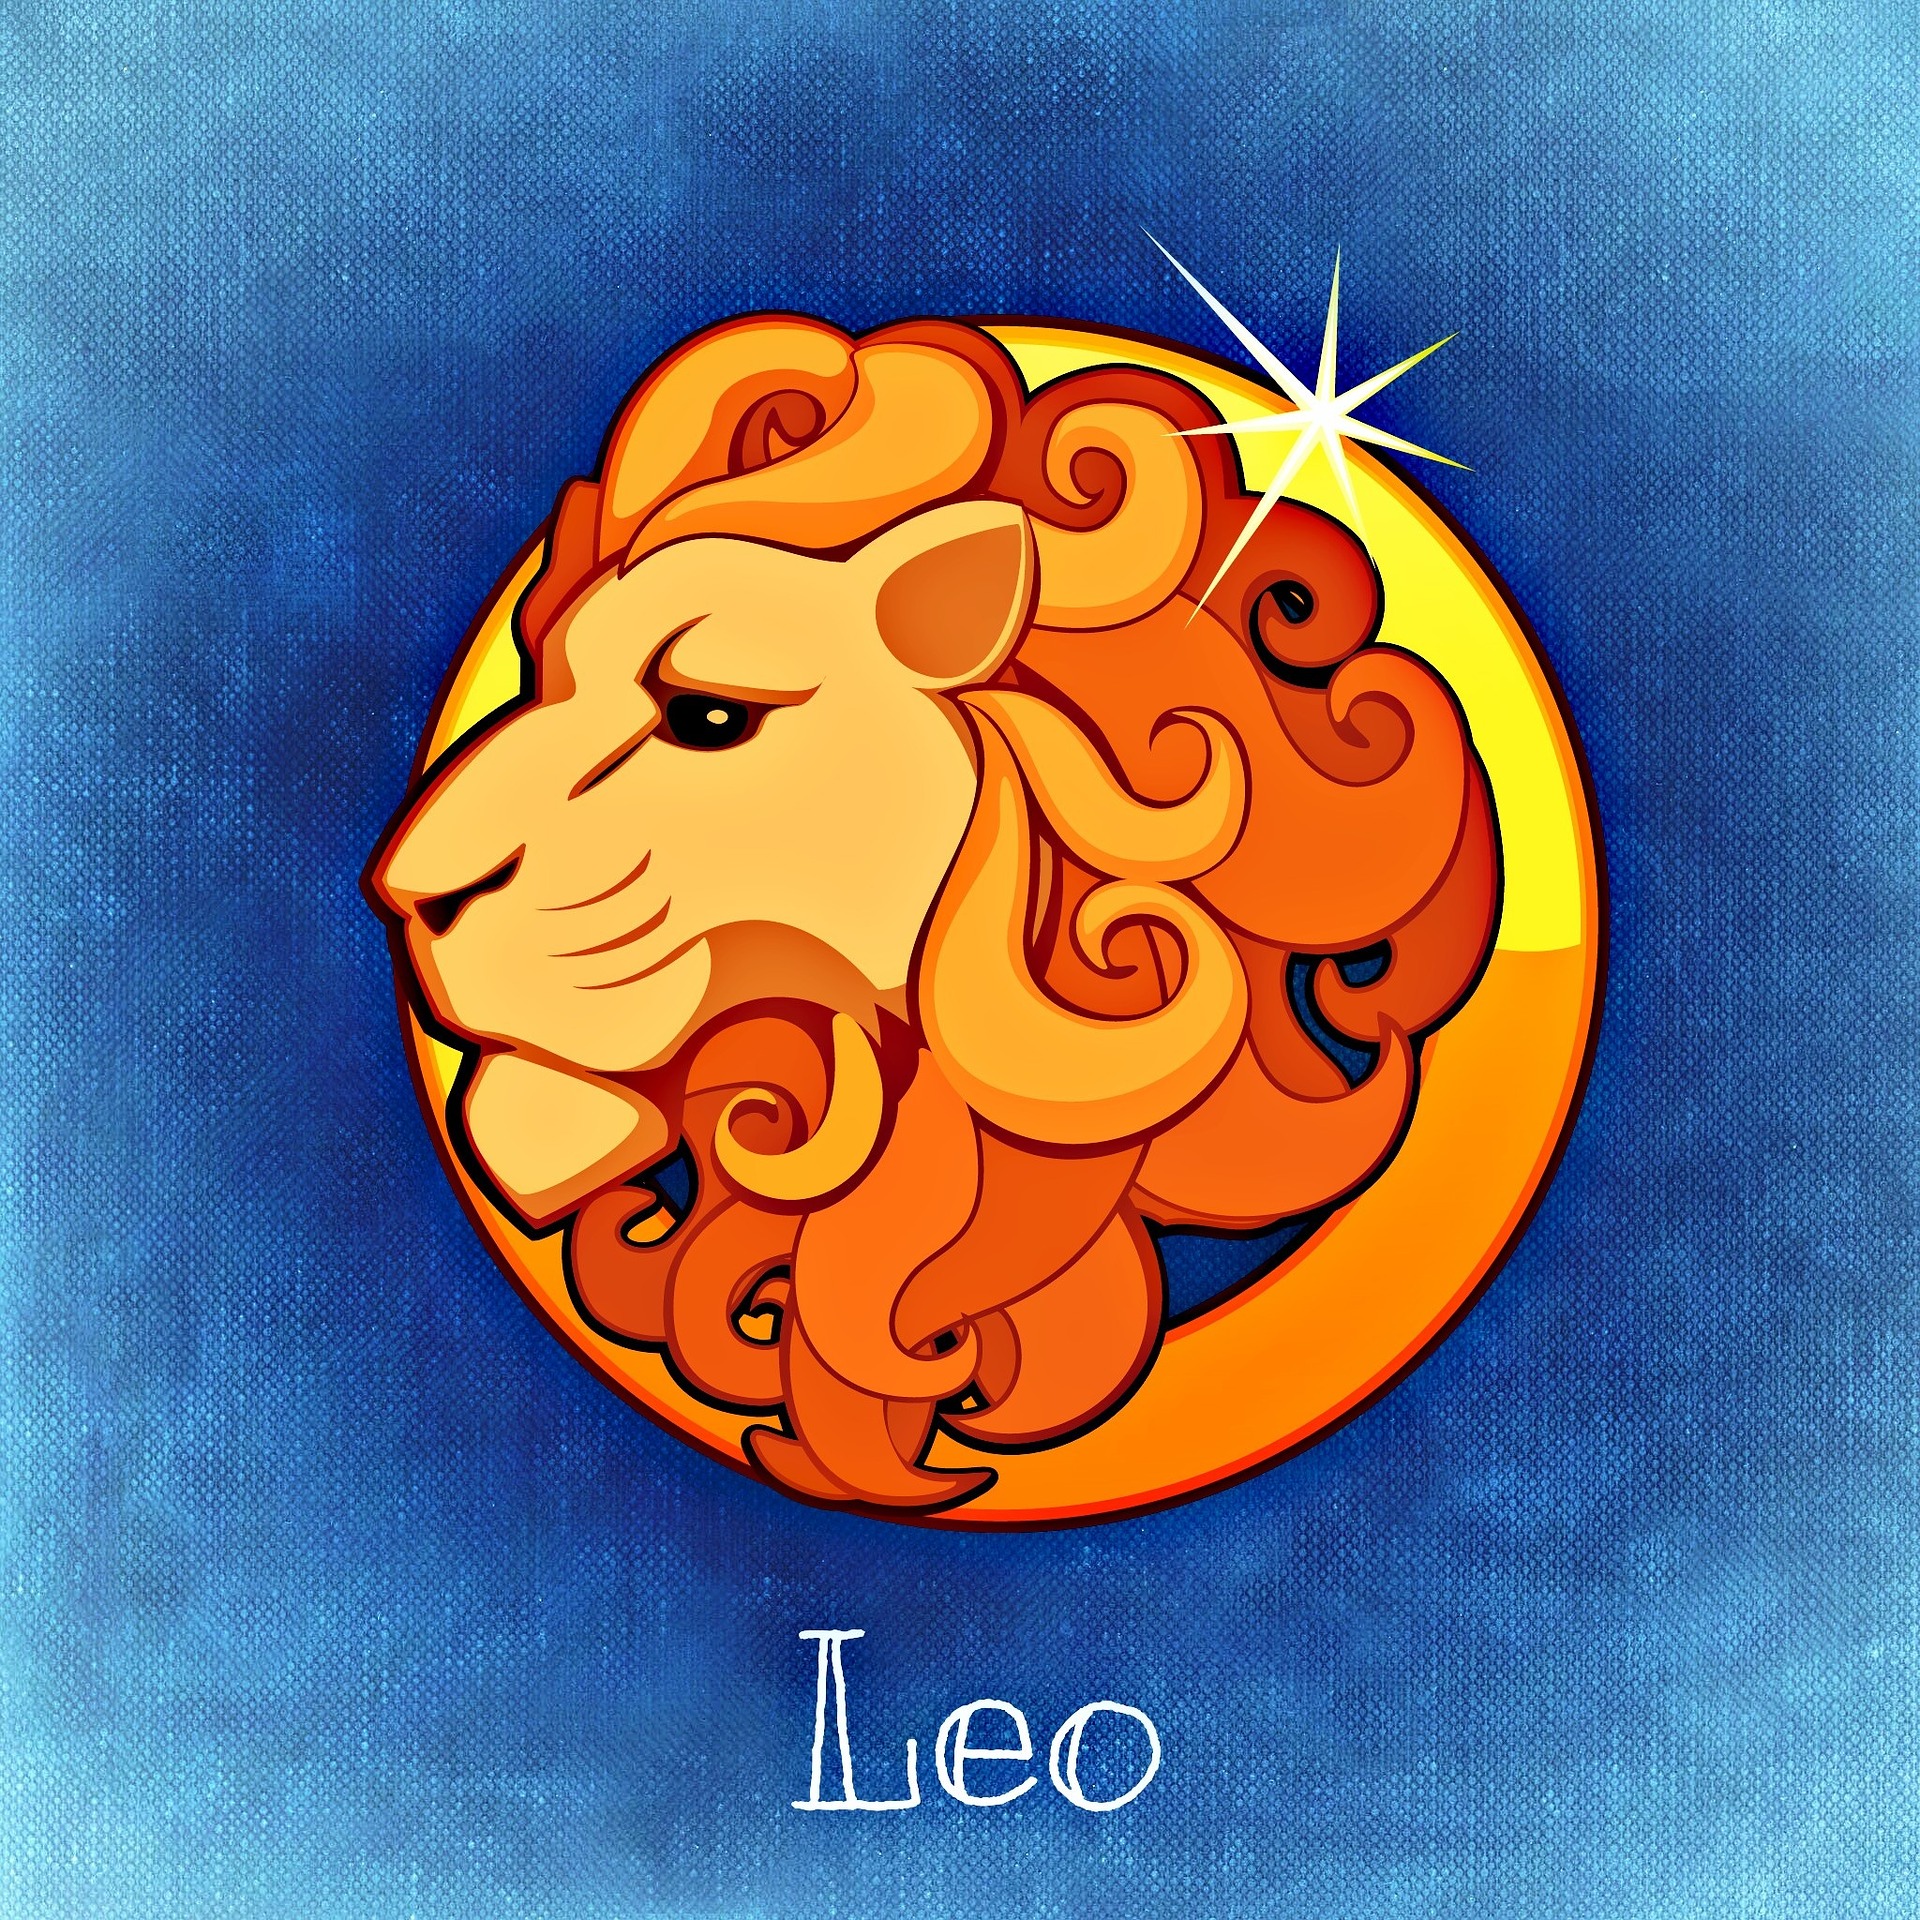 Leão (Foto Reprodução Pixabay)